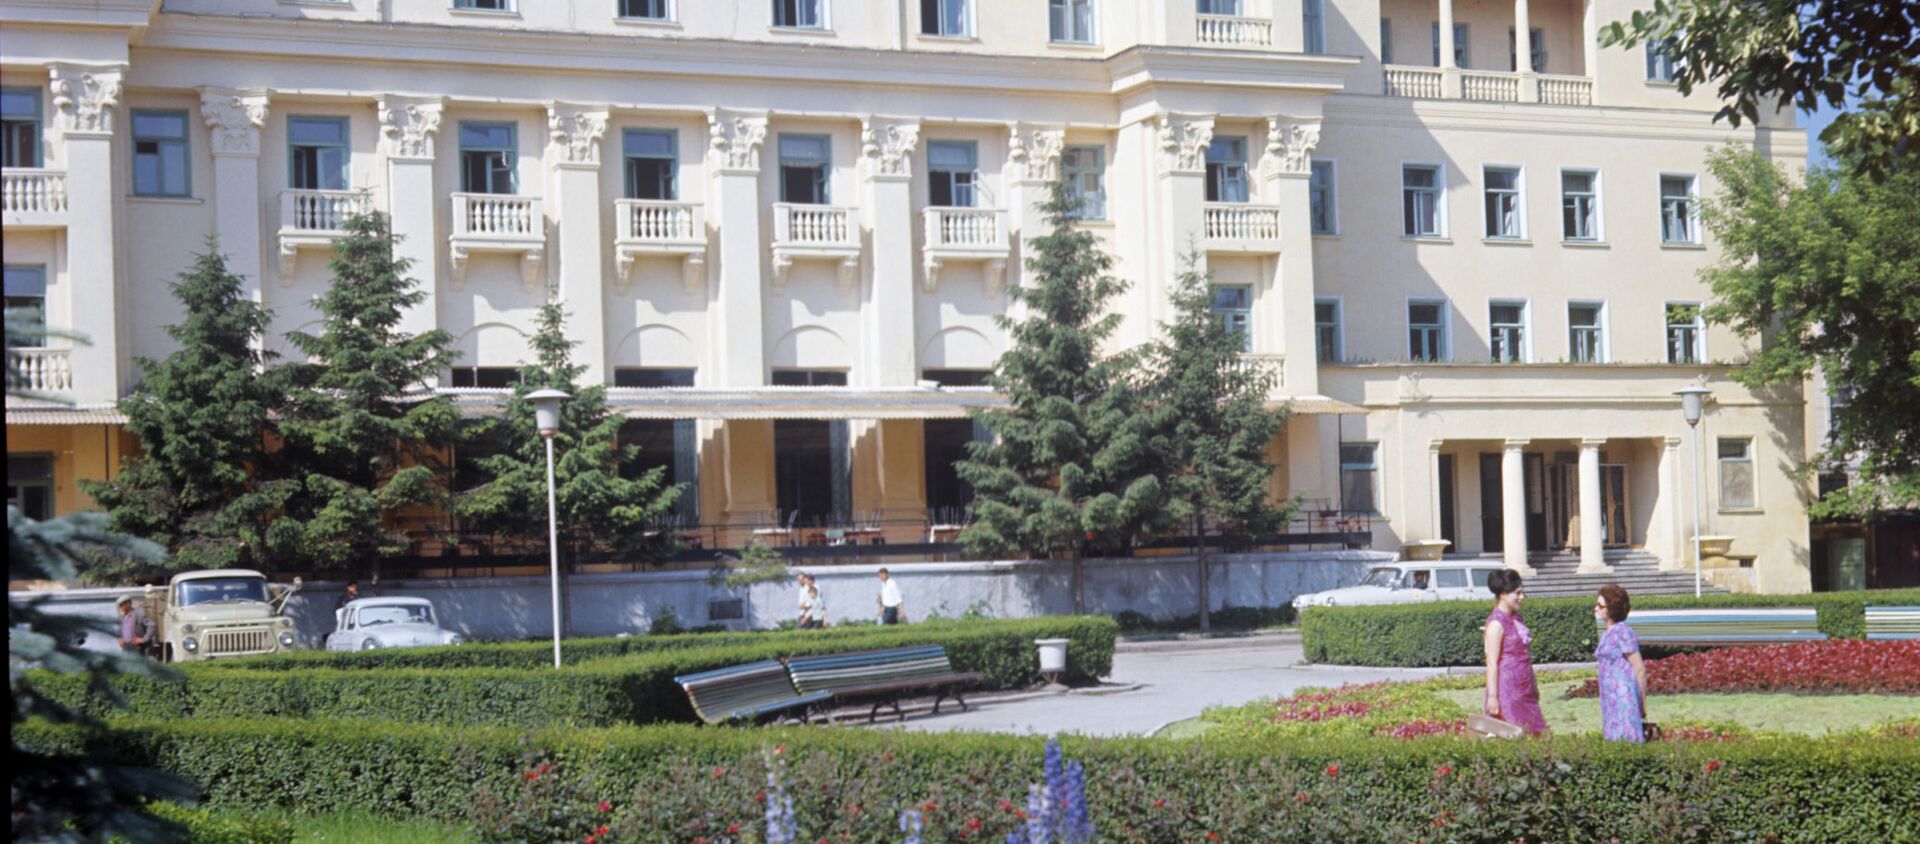 Здание гостиницы Молдова(сейчас здесь банк) в Кишиневе,1950 год - Sputnik Молдова, 1920, 17.04.2019